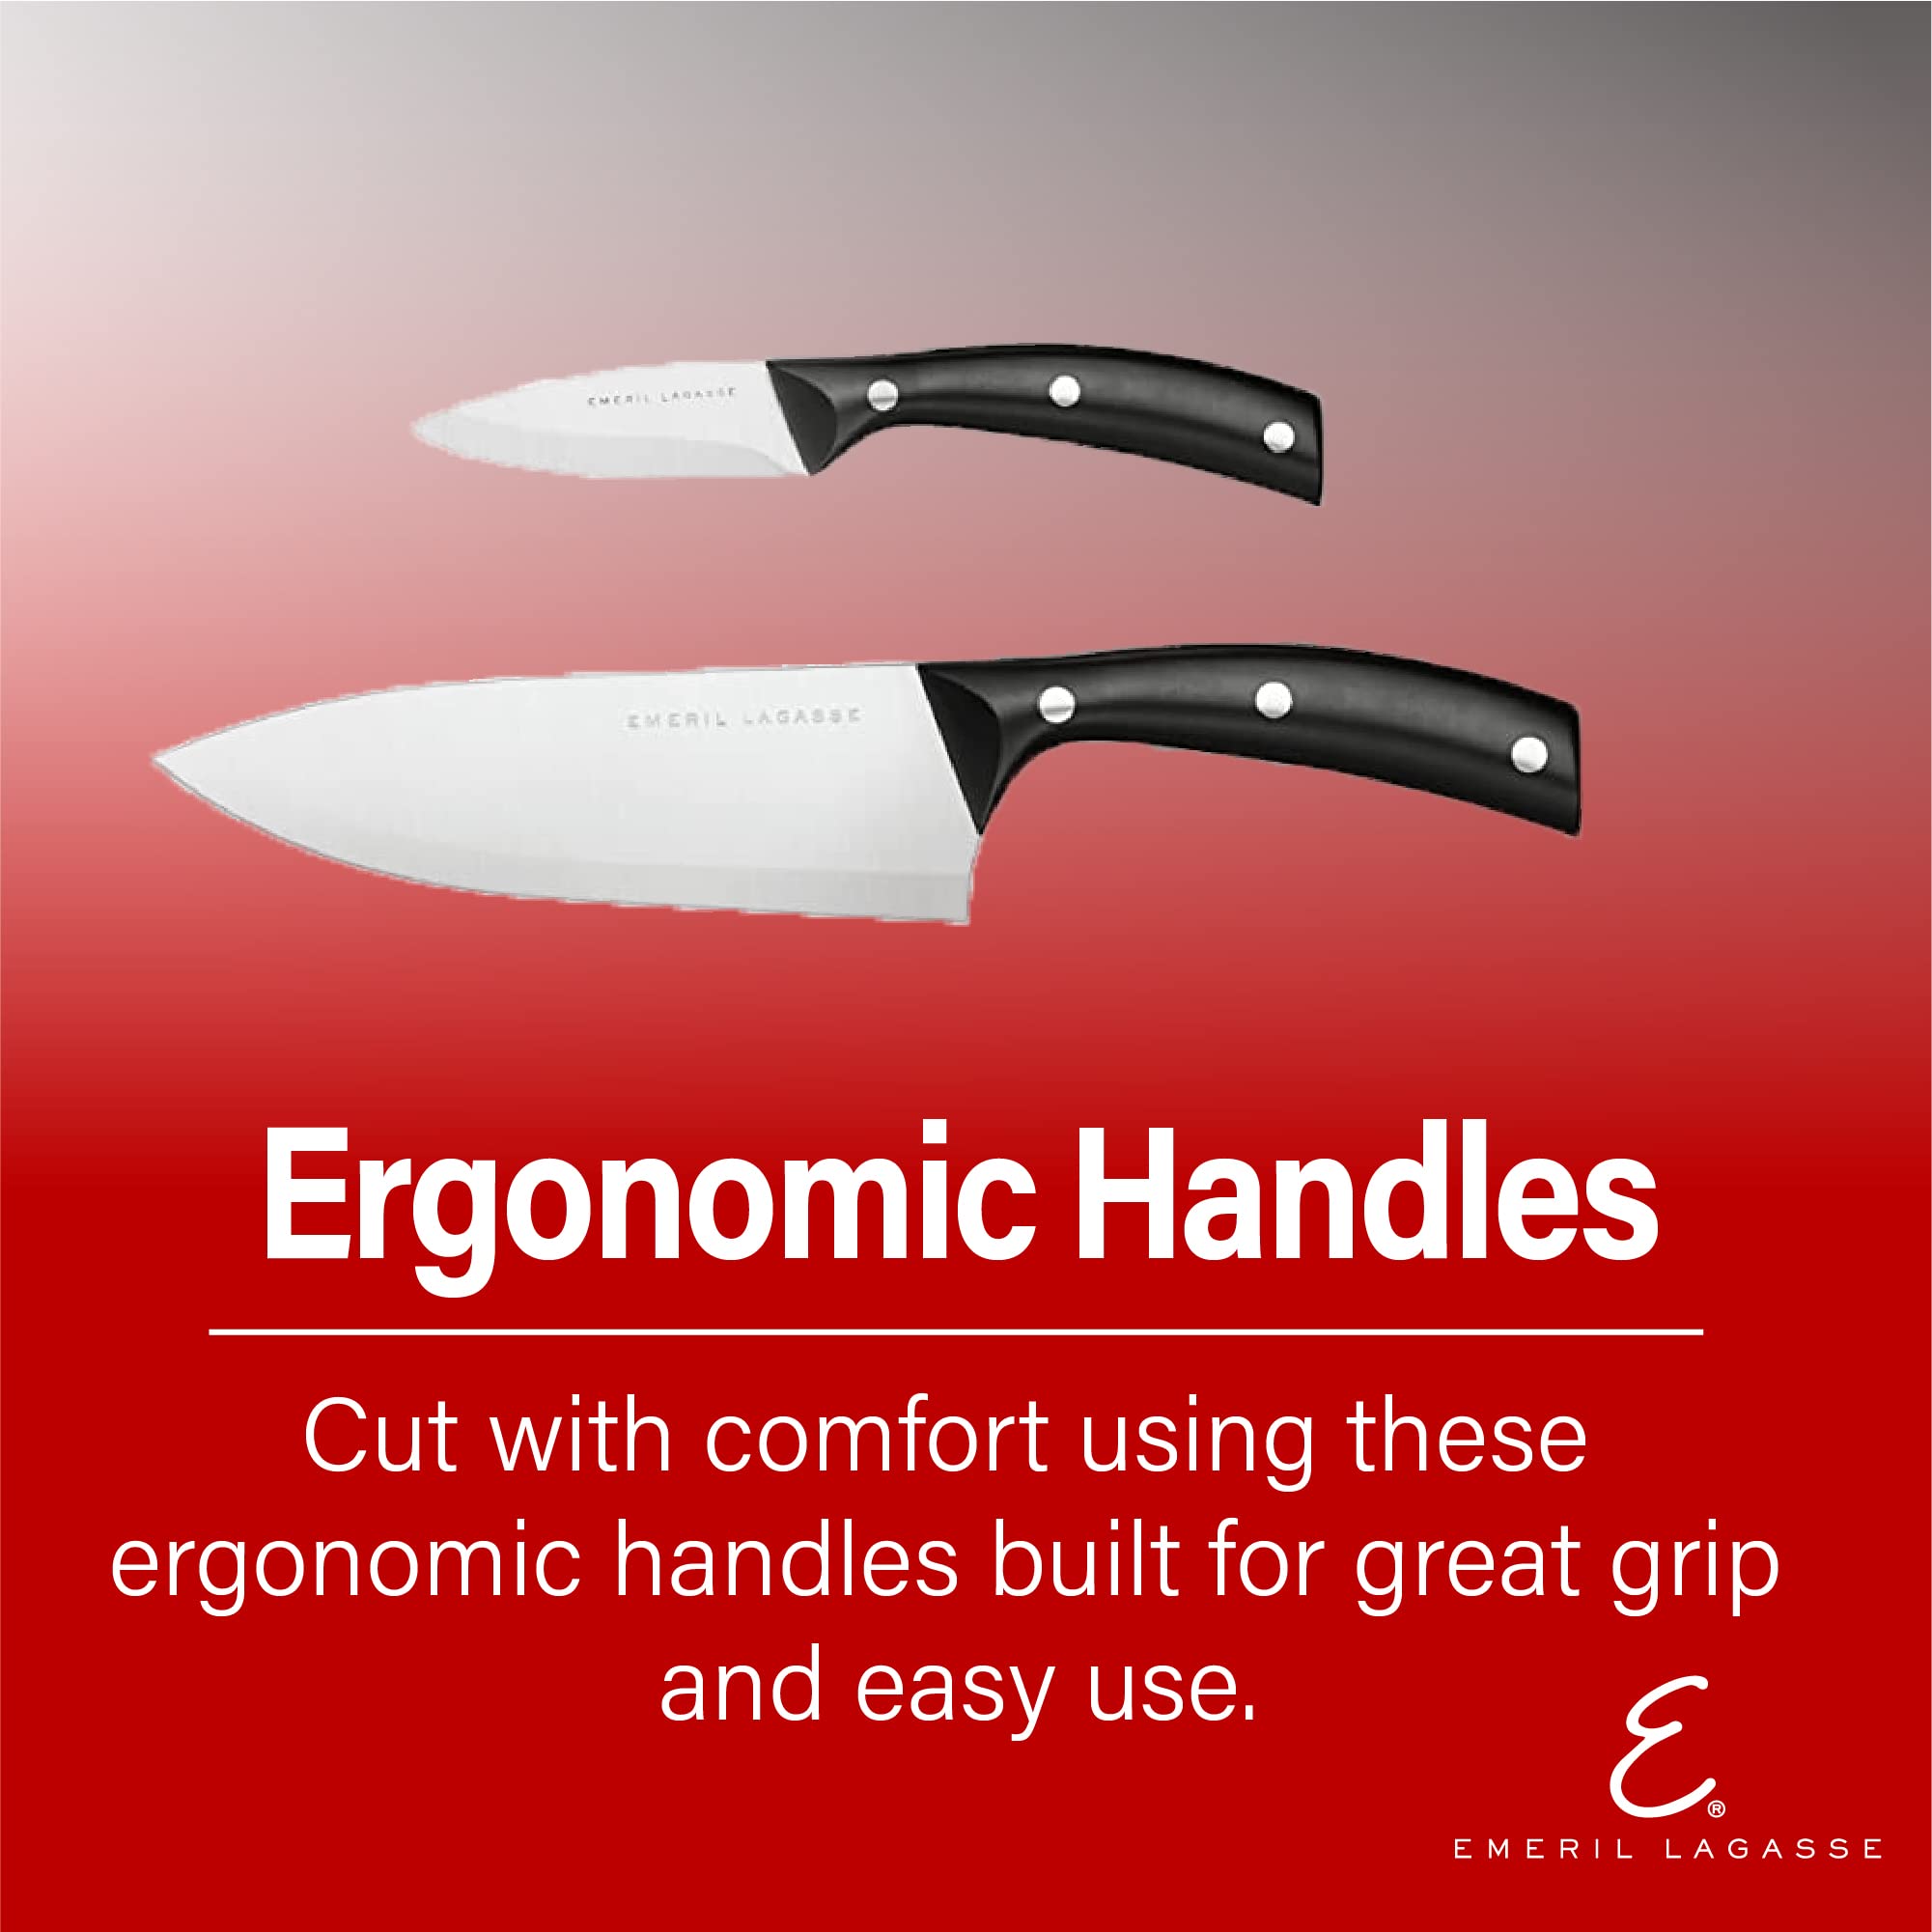 Emeril Lagasse 3-Piece Stamped Kitchen Knife Set - 8” Chef Knife, 5” Serrated Utility Knife, & 3.5” Paring Knife - Effortlessly Slice Fruits & Meats